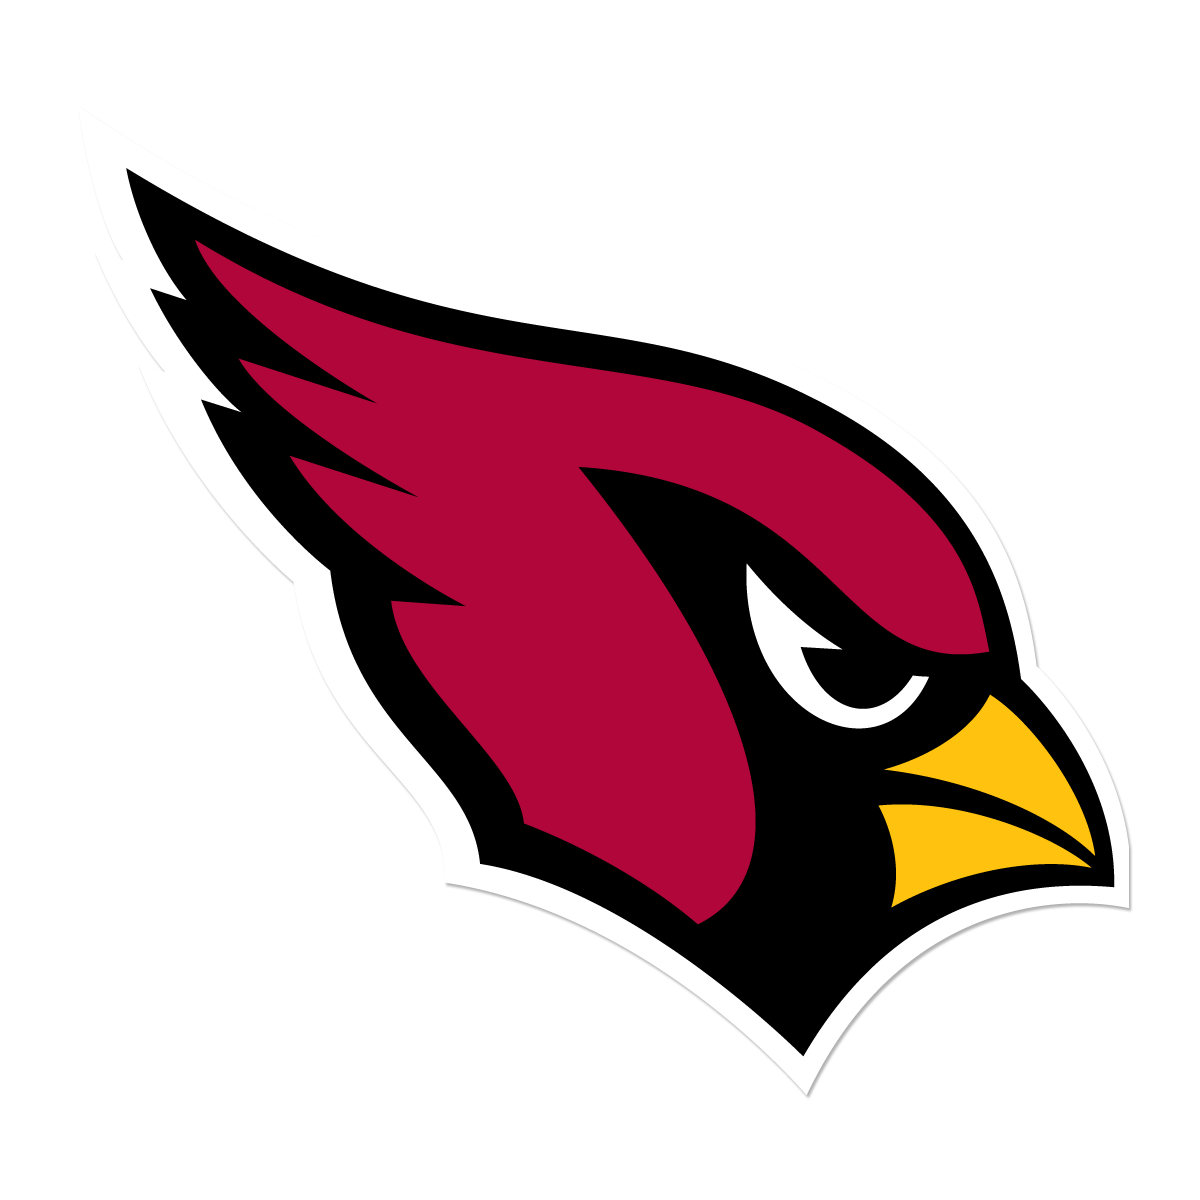 Arizona Cardinals Backgrounds, Compatible - PC, Mobile, Gadgets| 1200x1200 px